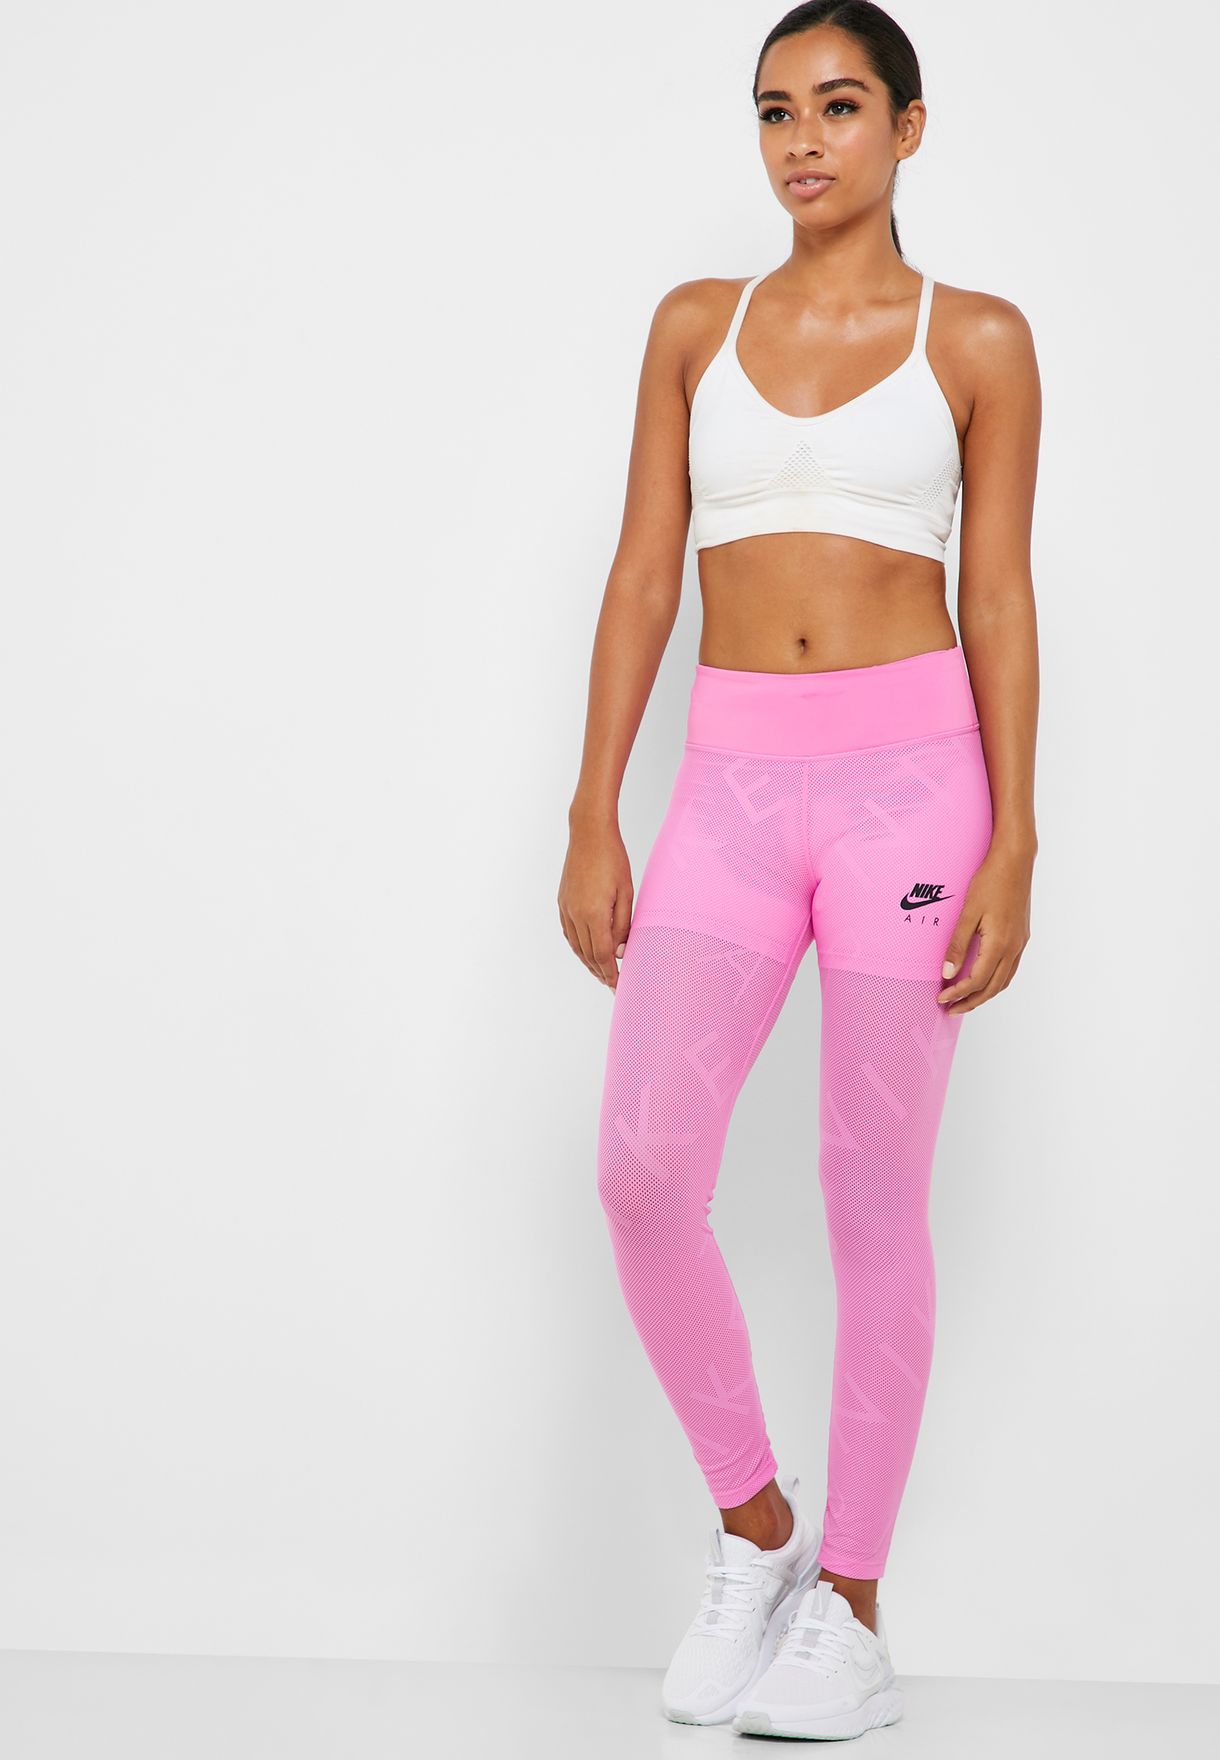 nike air pink leggings